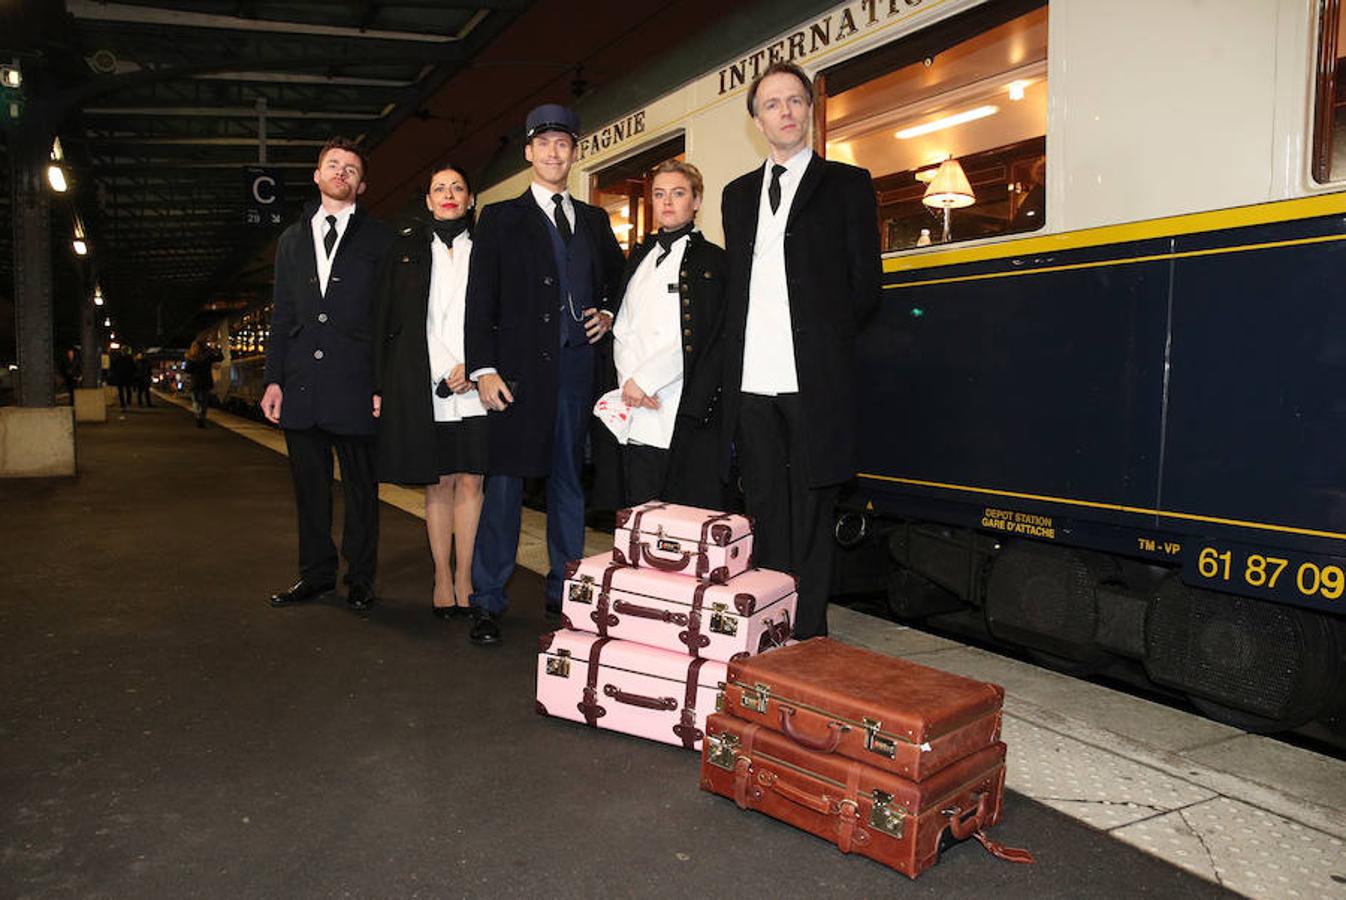 Décadas después de su último viaje oficial, el legendario tren se pone de nuevo en marcha con un invitado especial a bordo: el bisnieto de Agatha Christie y custodio de su legado